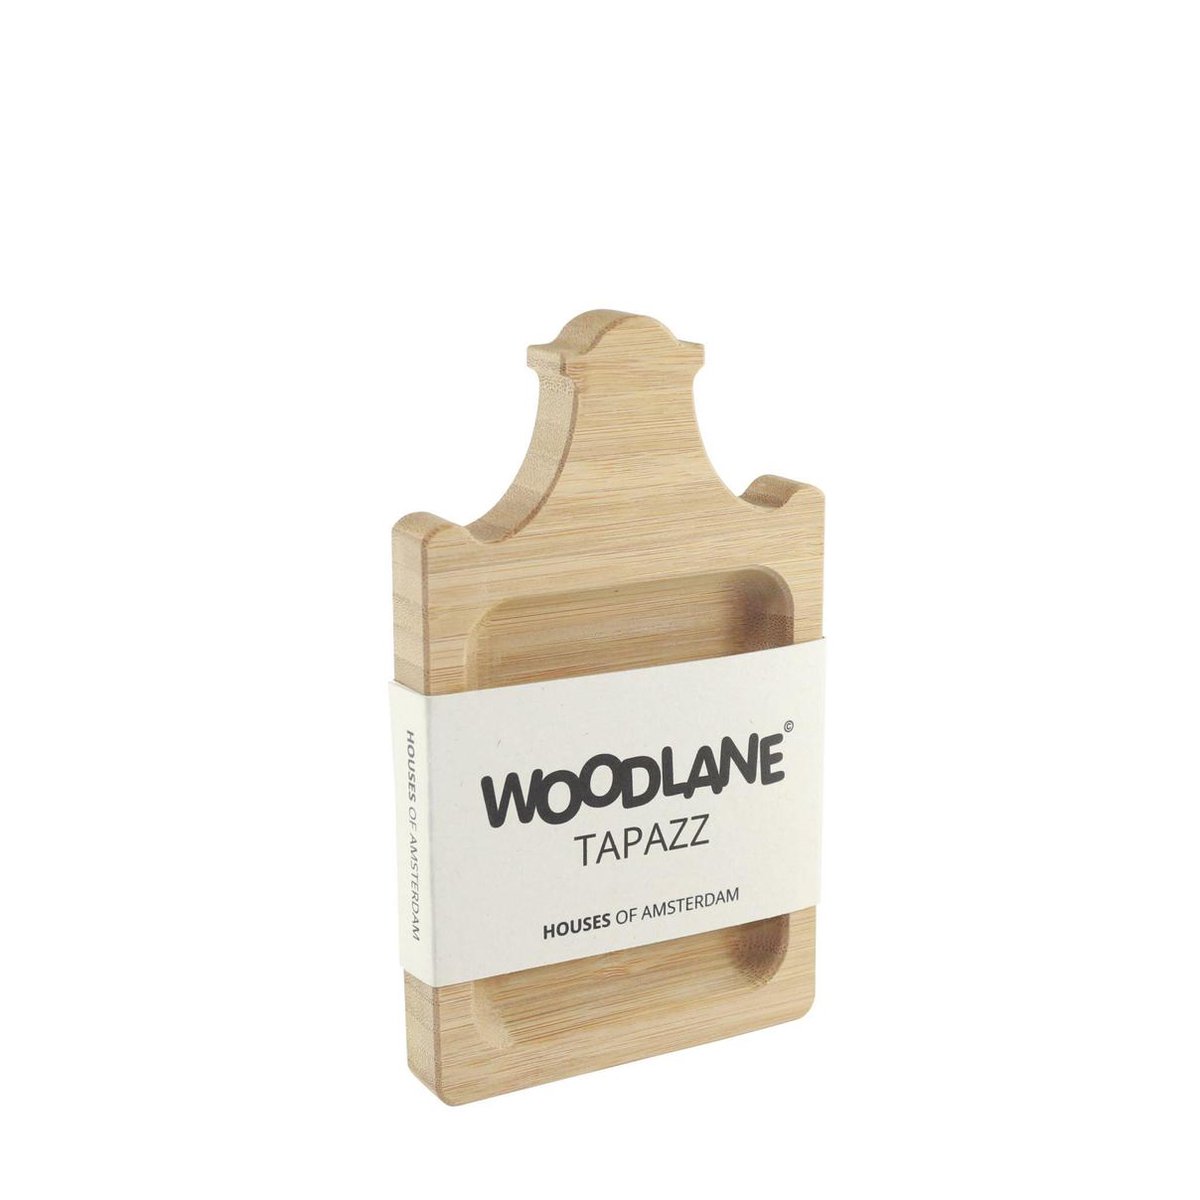 Woodlane Tapazz klokgevel - Bamboe tapas / gebak plankje